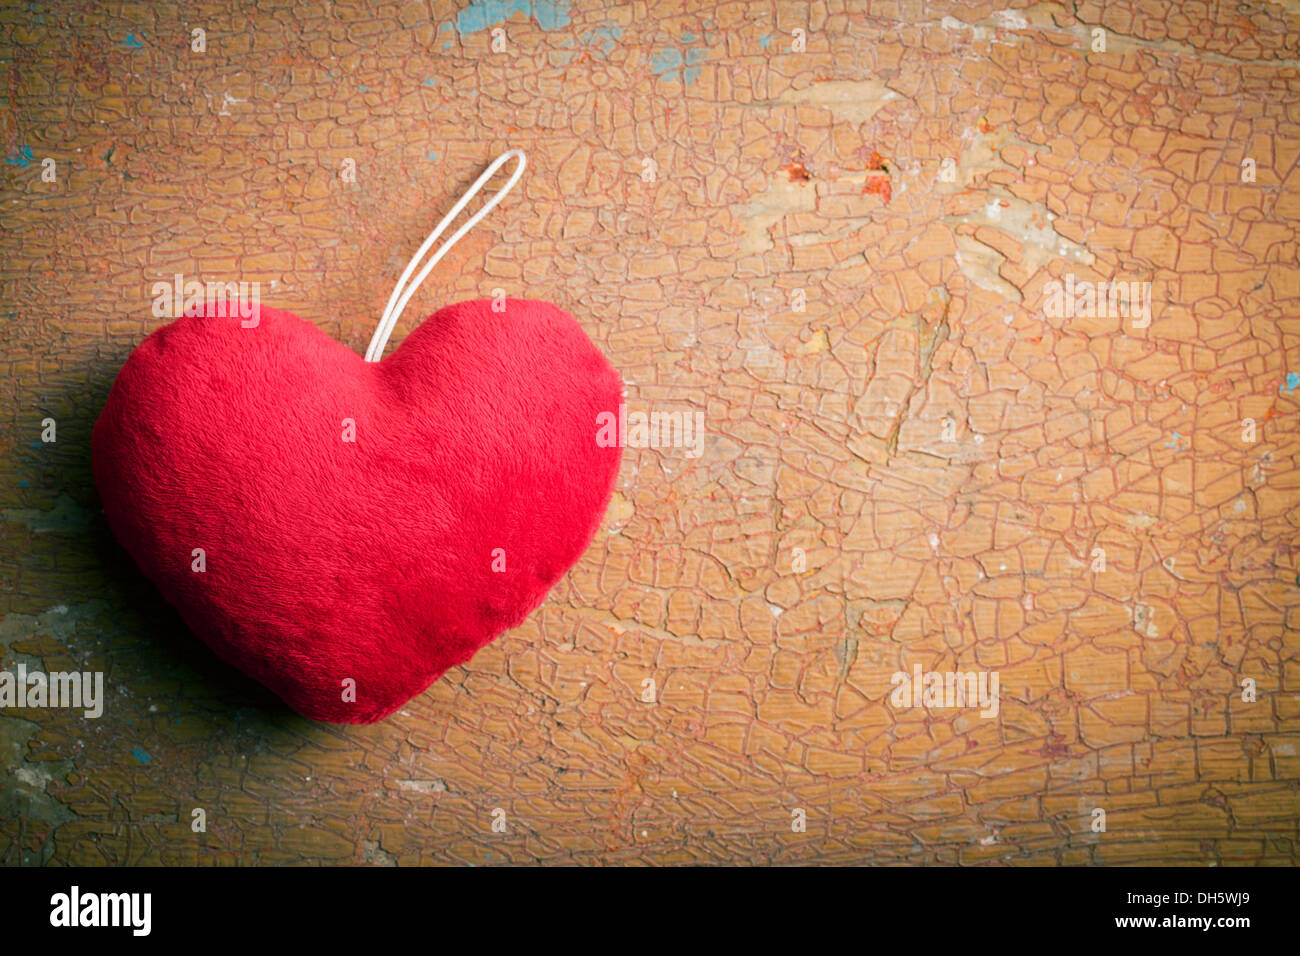 Vista superior del corazón peludo rojo sobre el antiguo fondo agrietado Foto de stock